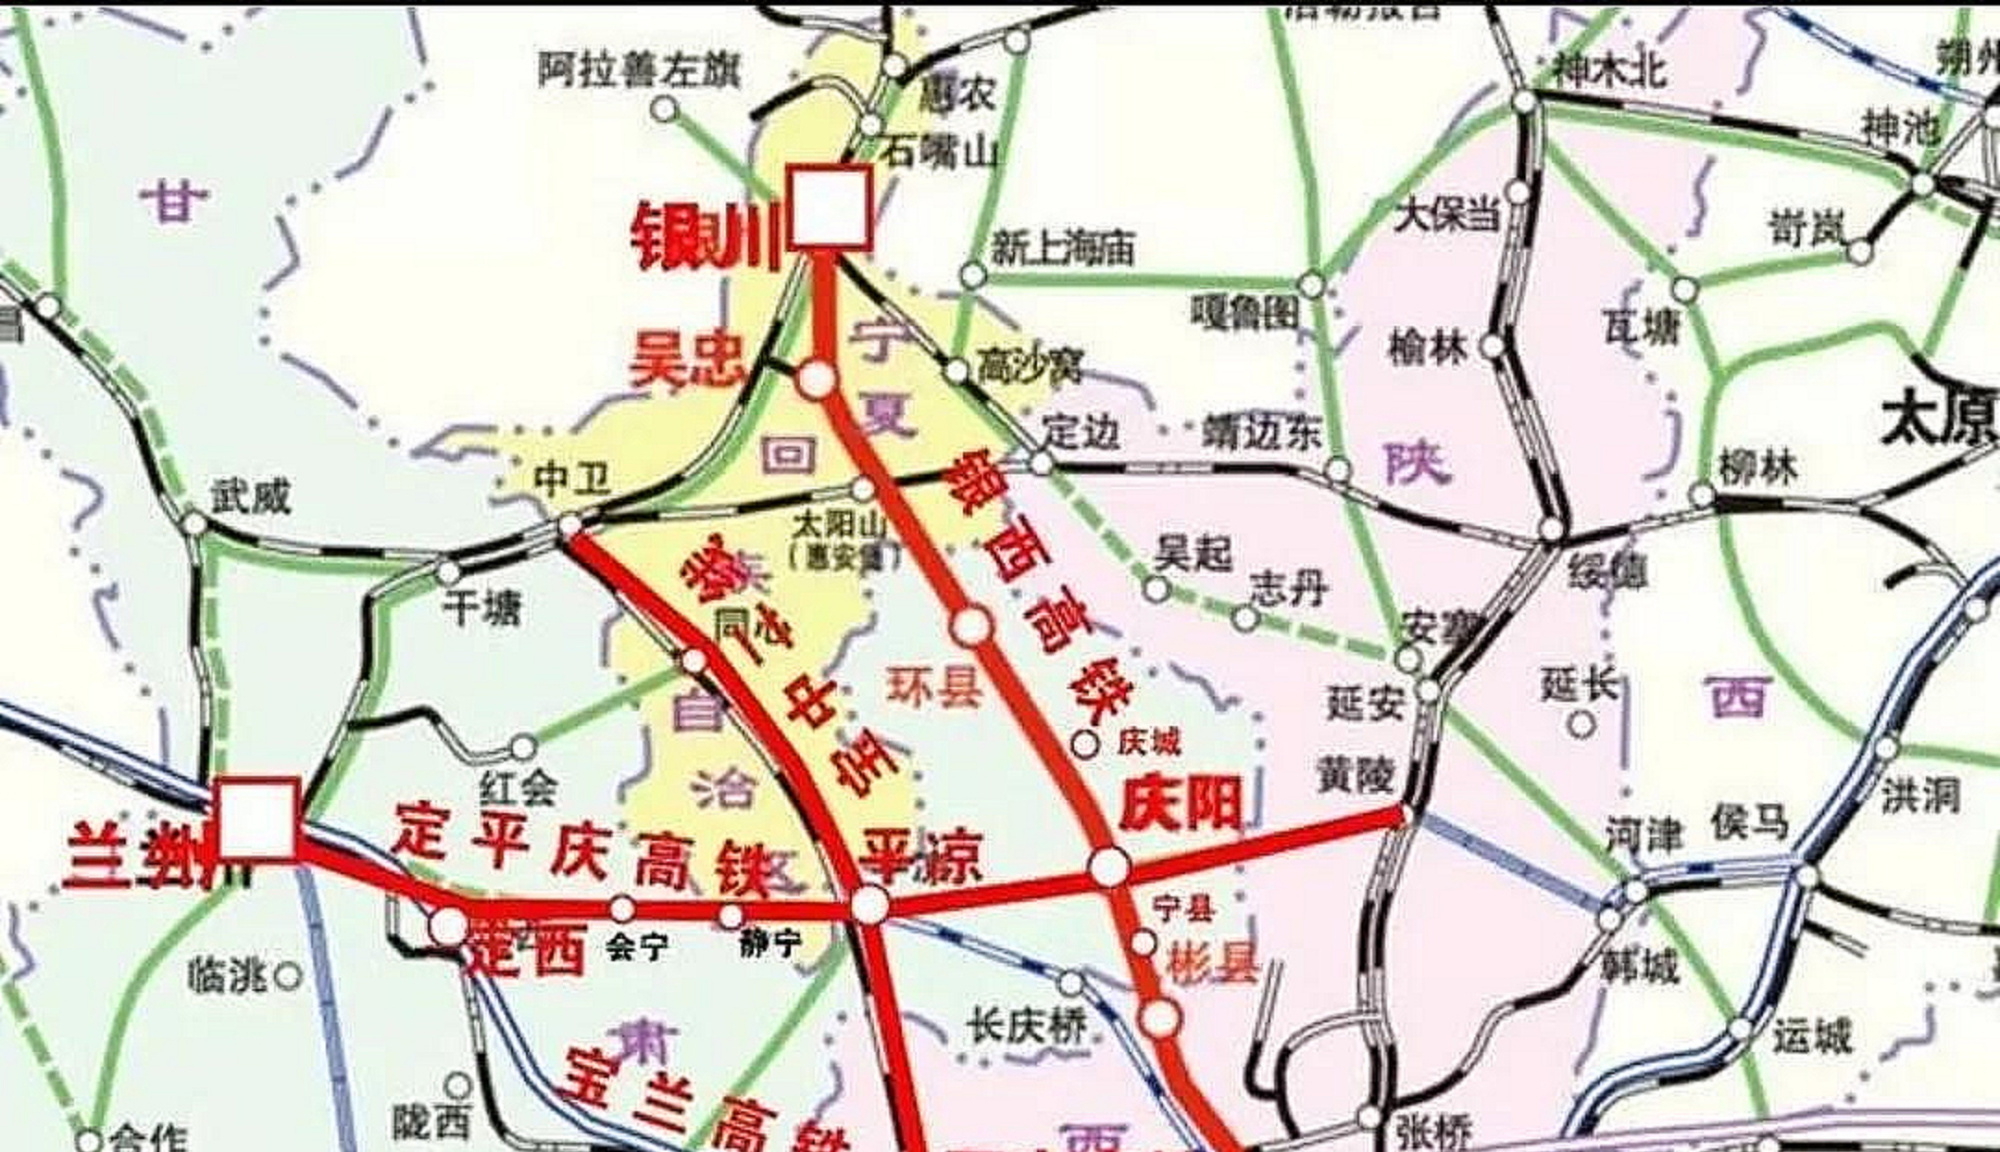 甘肃省平庆铁路建设后,平凉市,庆阳市的出行条件越来越好